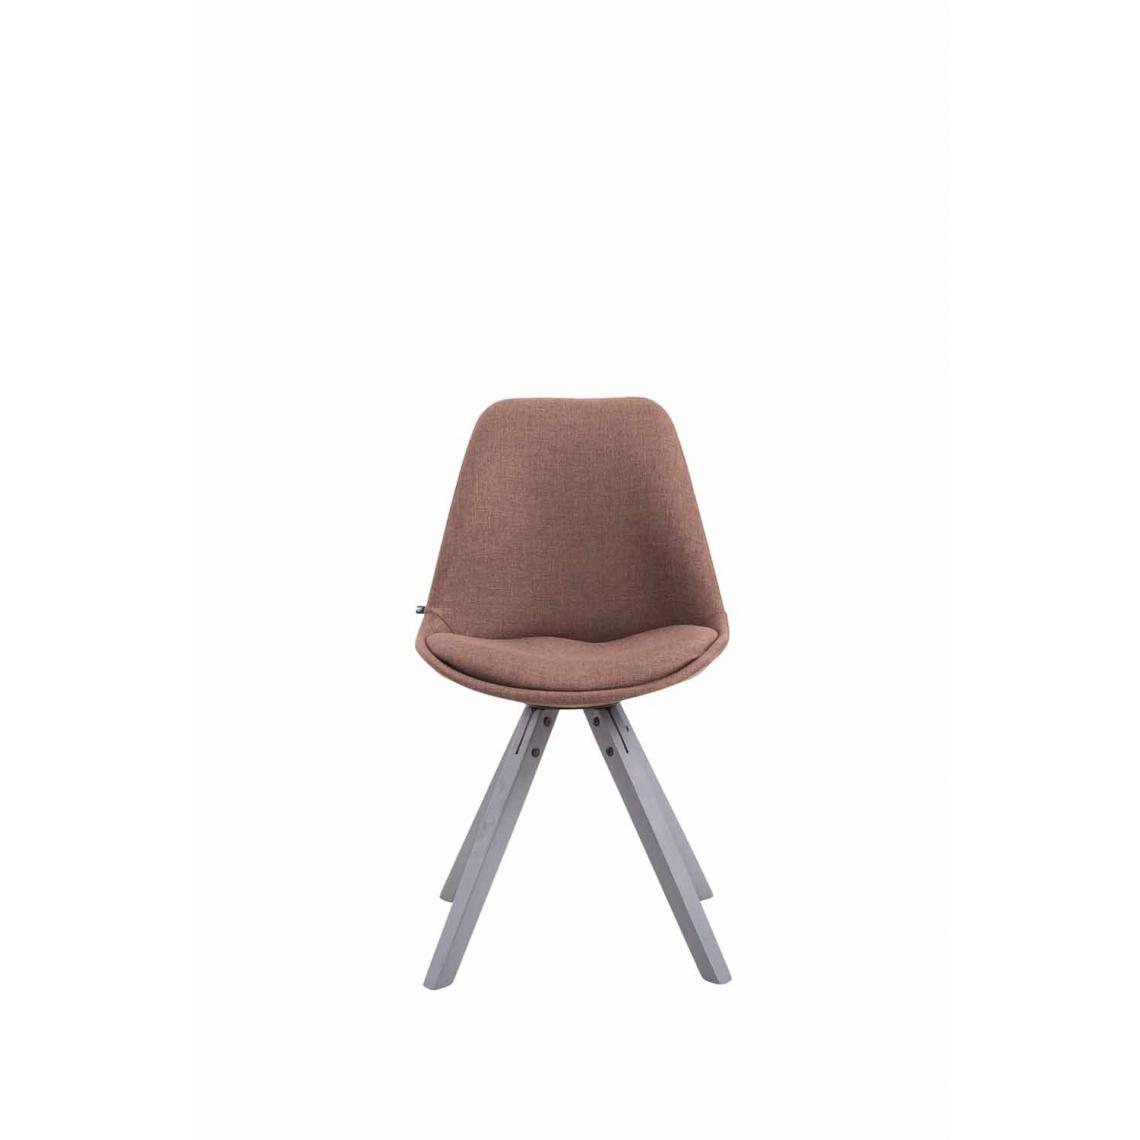 Icaverne - Splendide Chaise visiteur tissu Katmandou Square gris couleur marron - Chaises